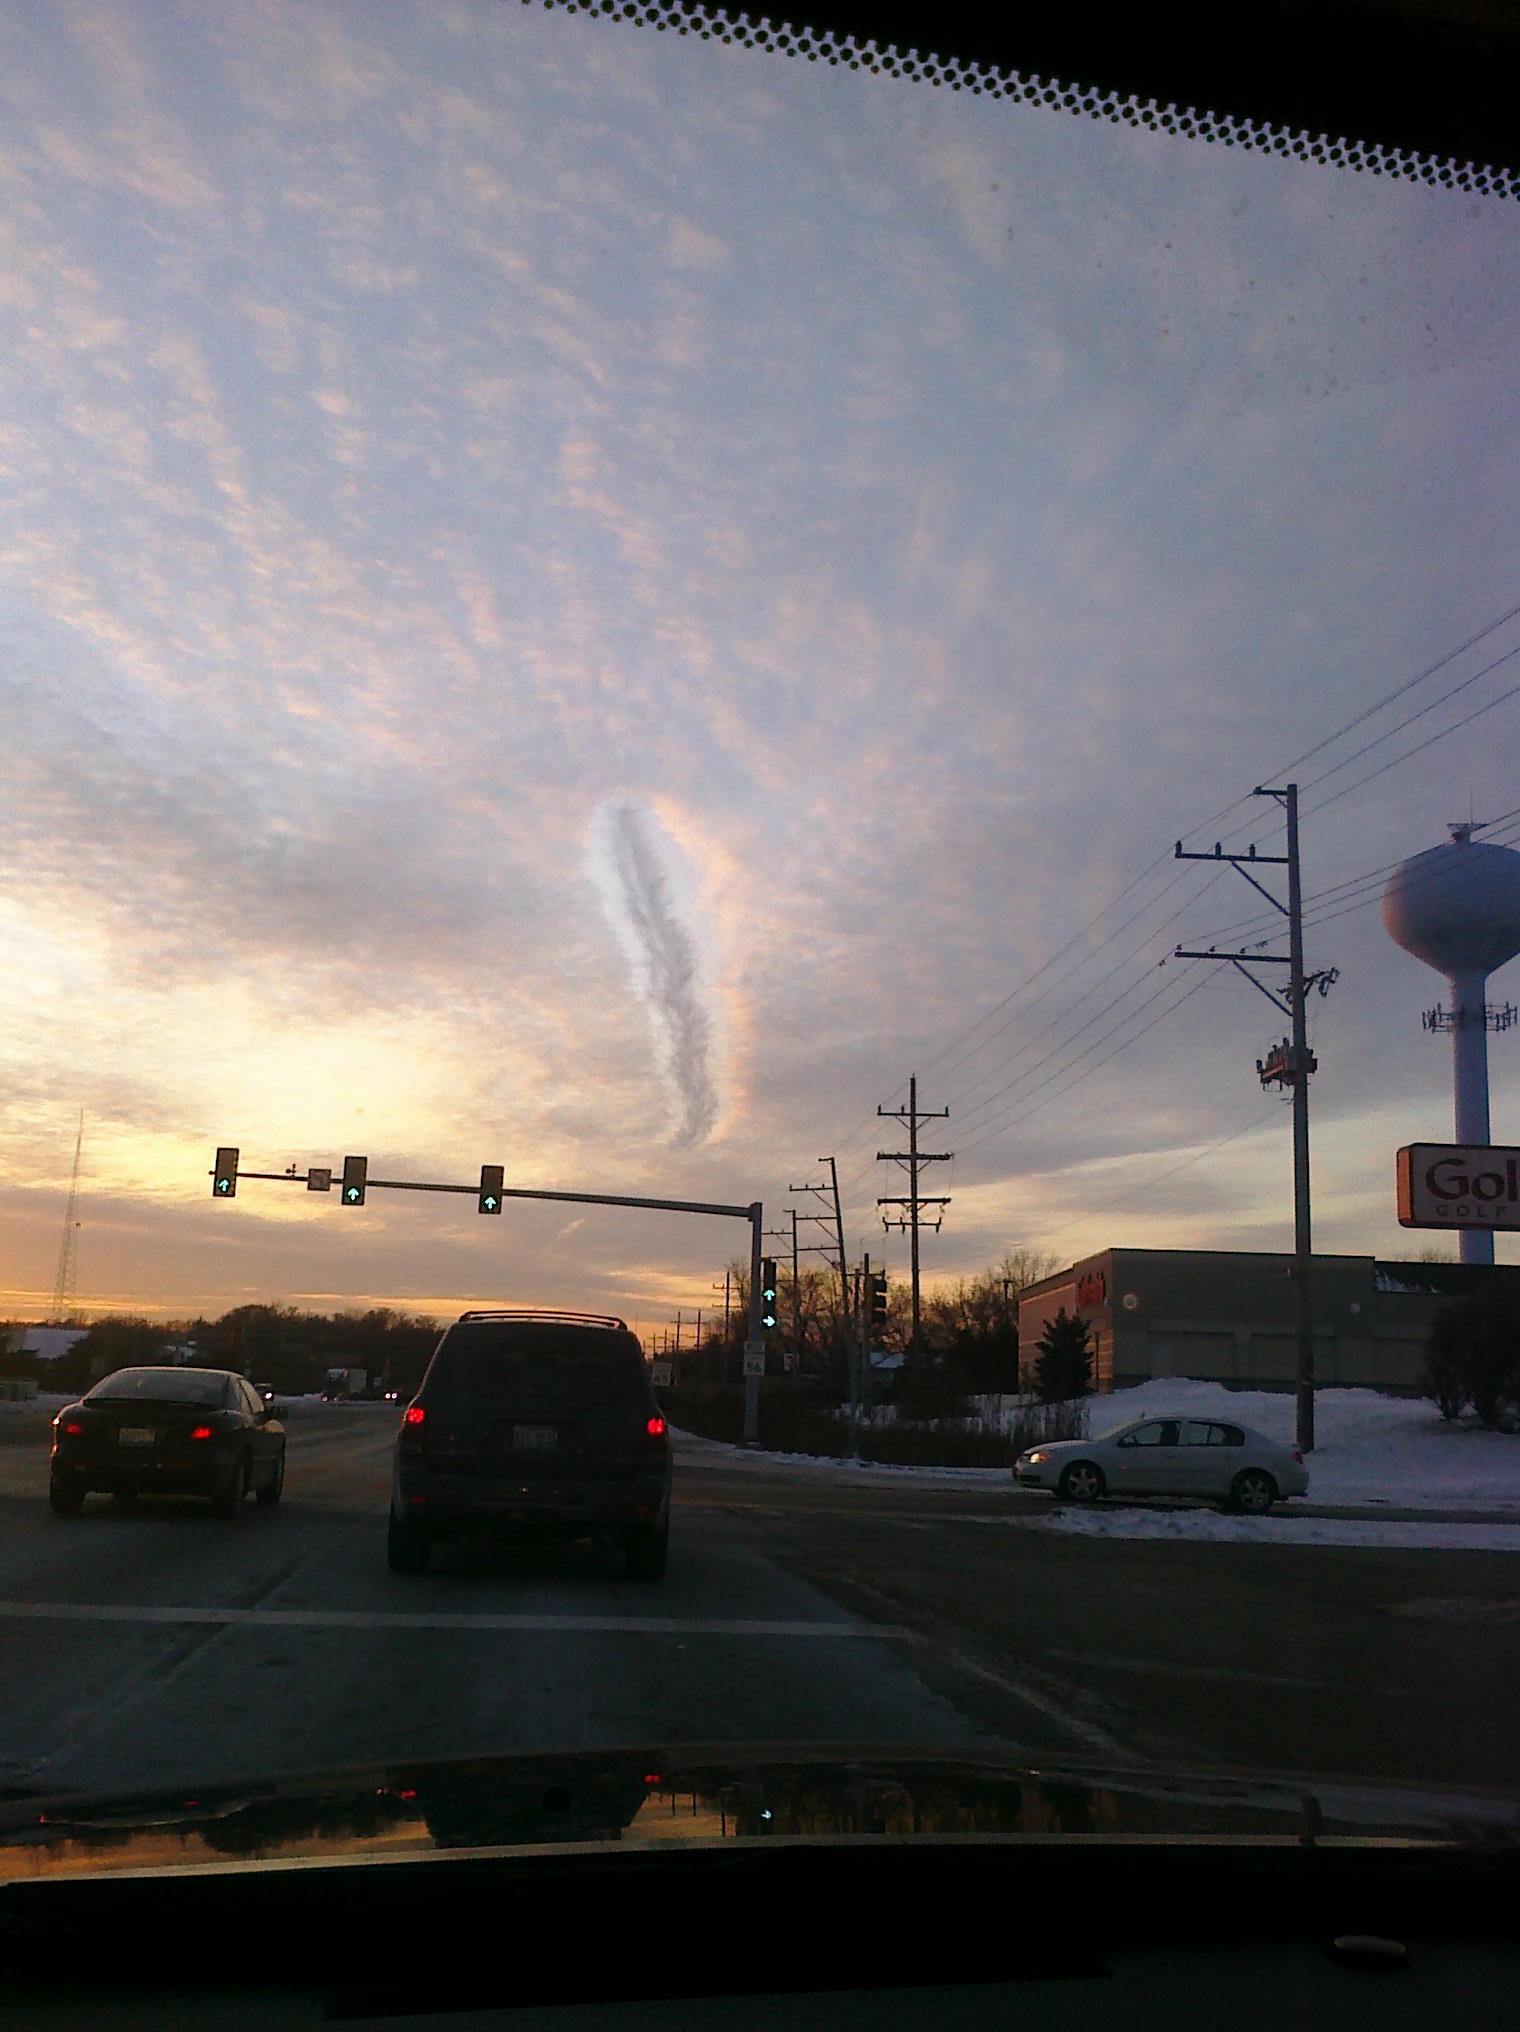 Strange Cloud formation